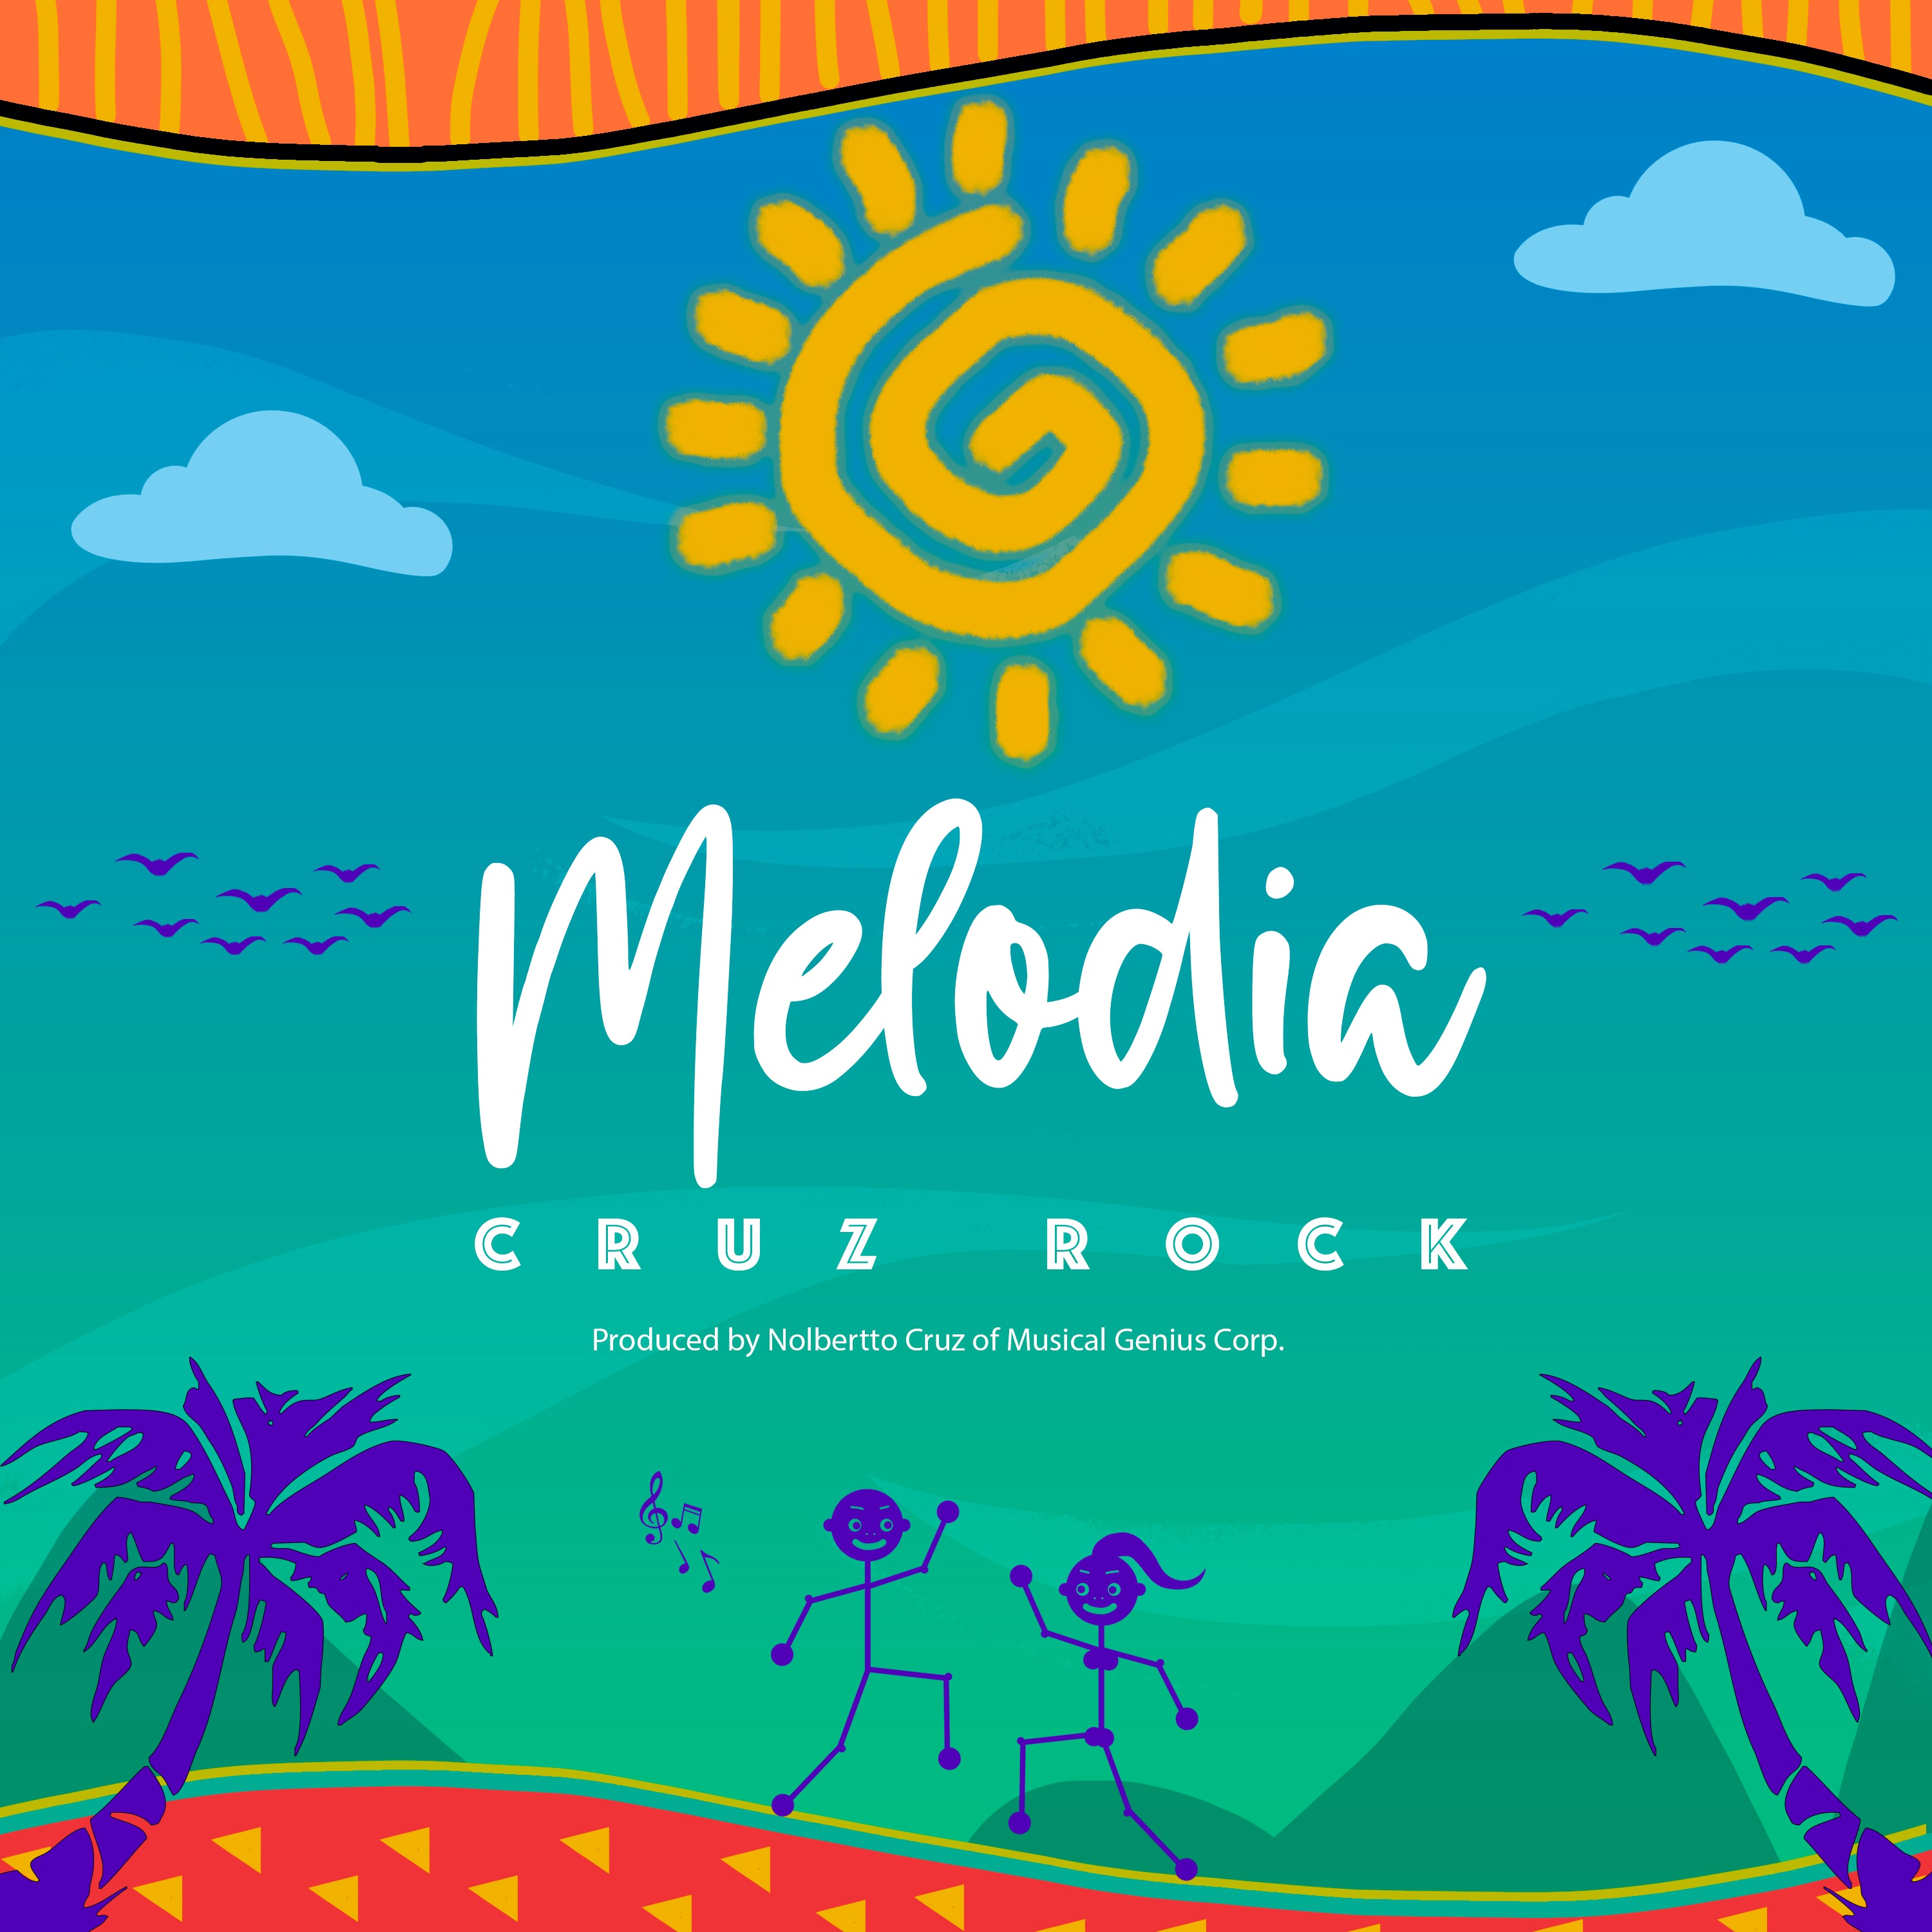 Letöltés Melodia by Cruz Rock